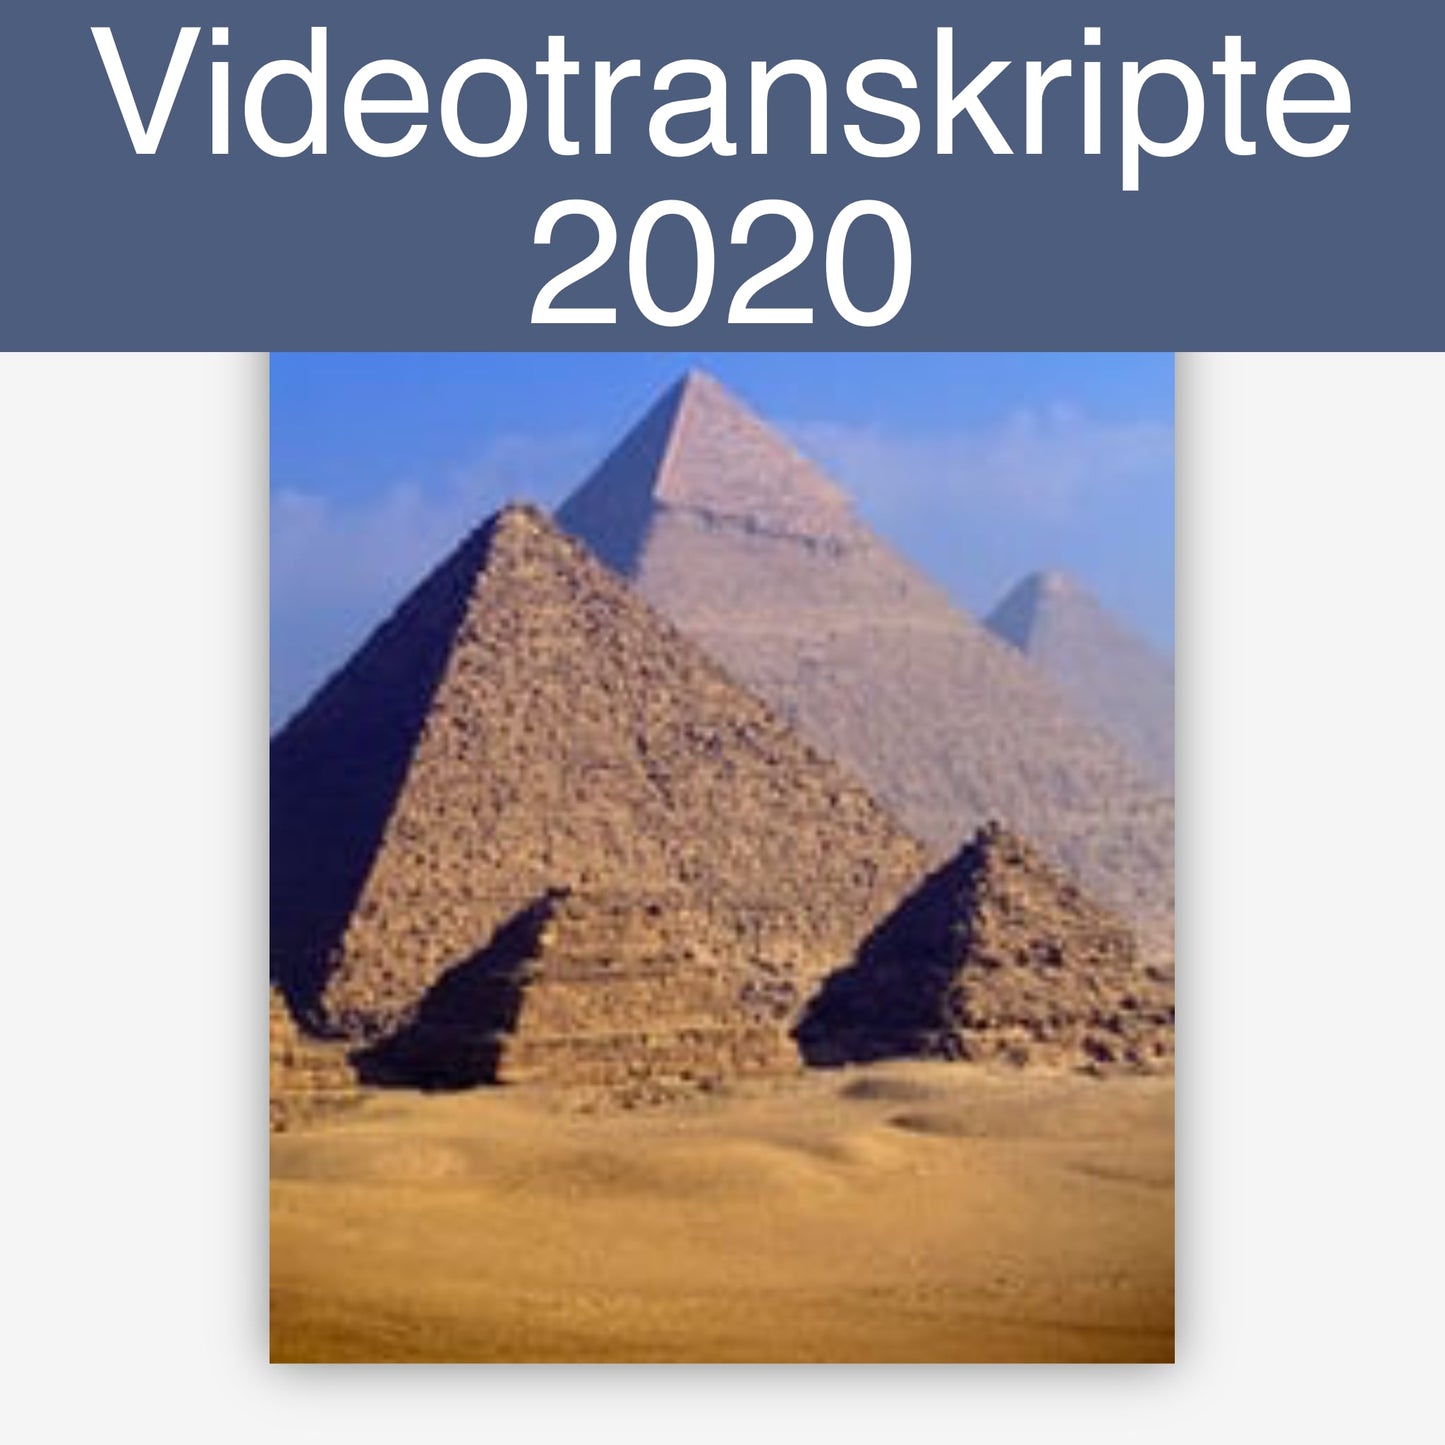 Videotranskripte 2020